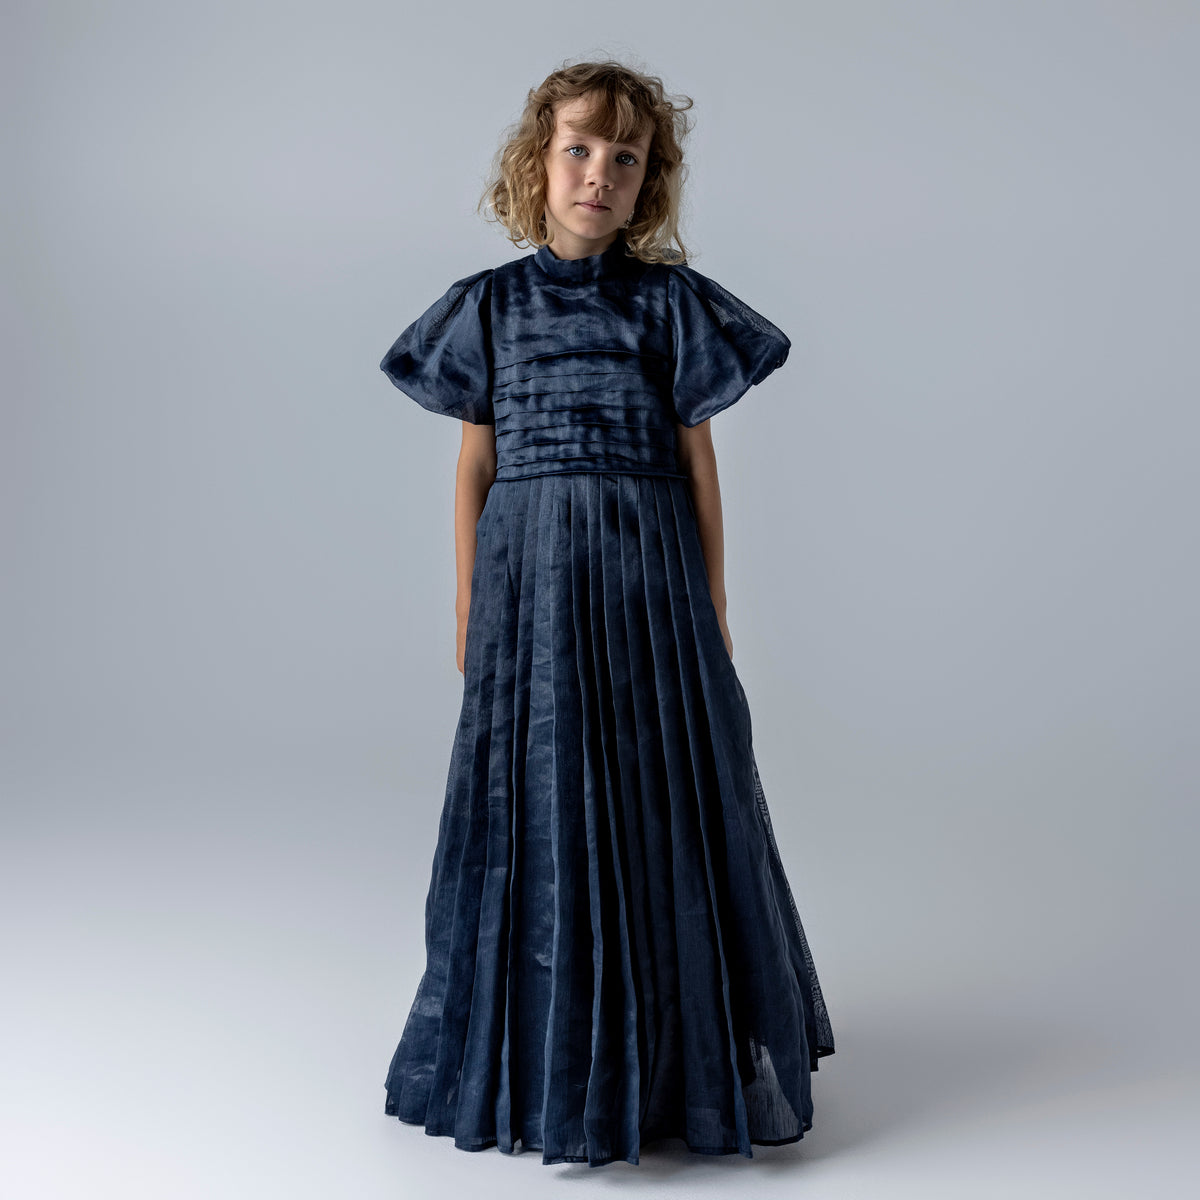 Mummymoon Ida Maxi Dress - Navy Blue